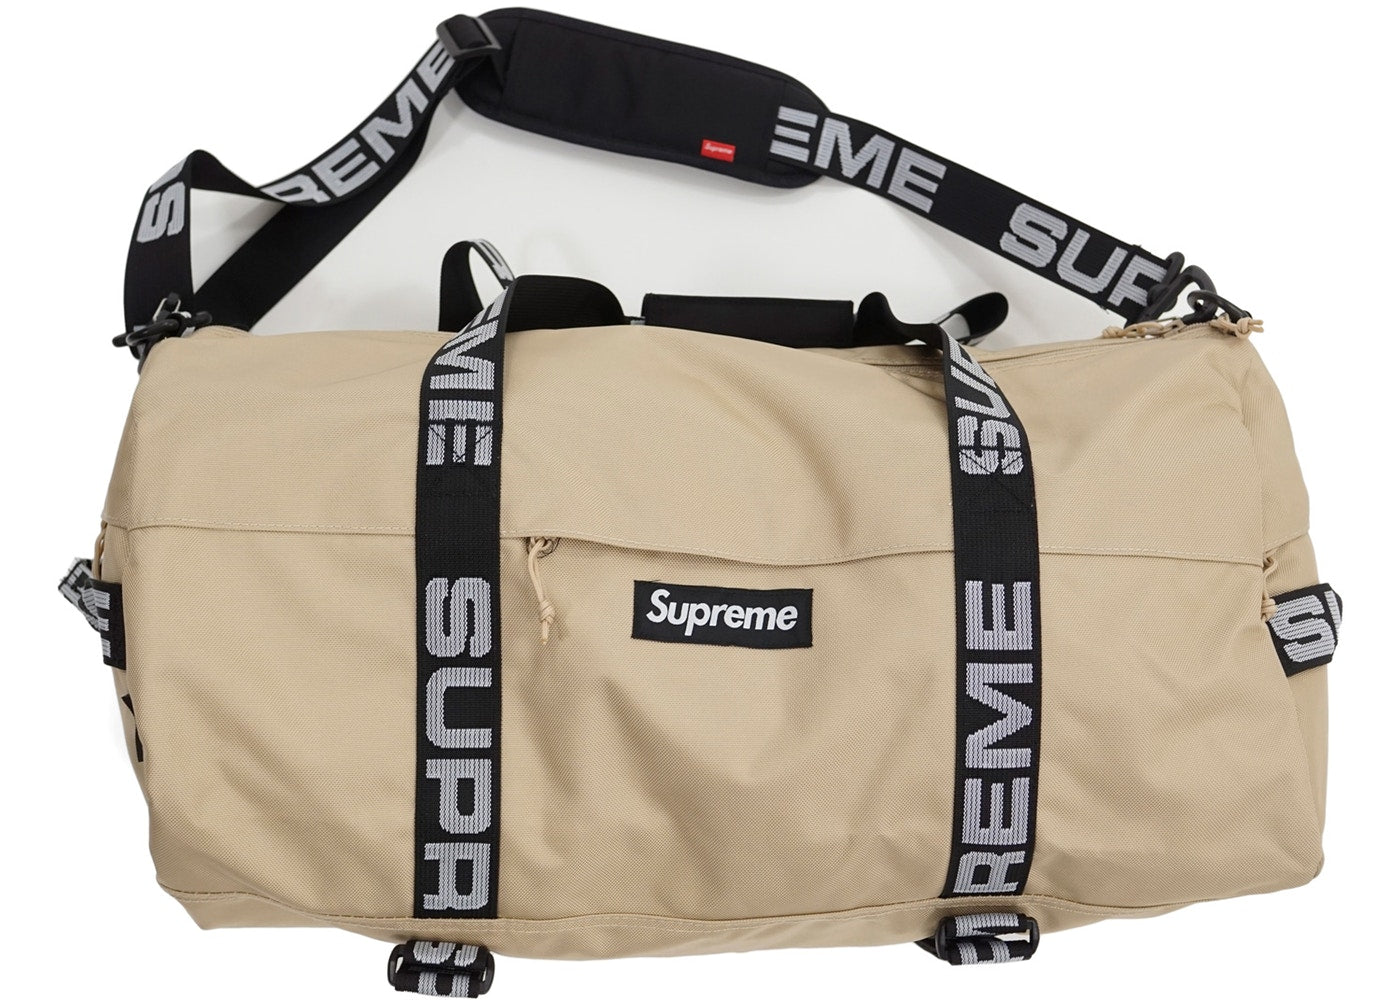 Supreme Duffle Bag Ss18 Small - Just Me and Supreme